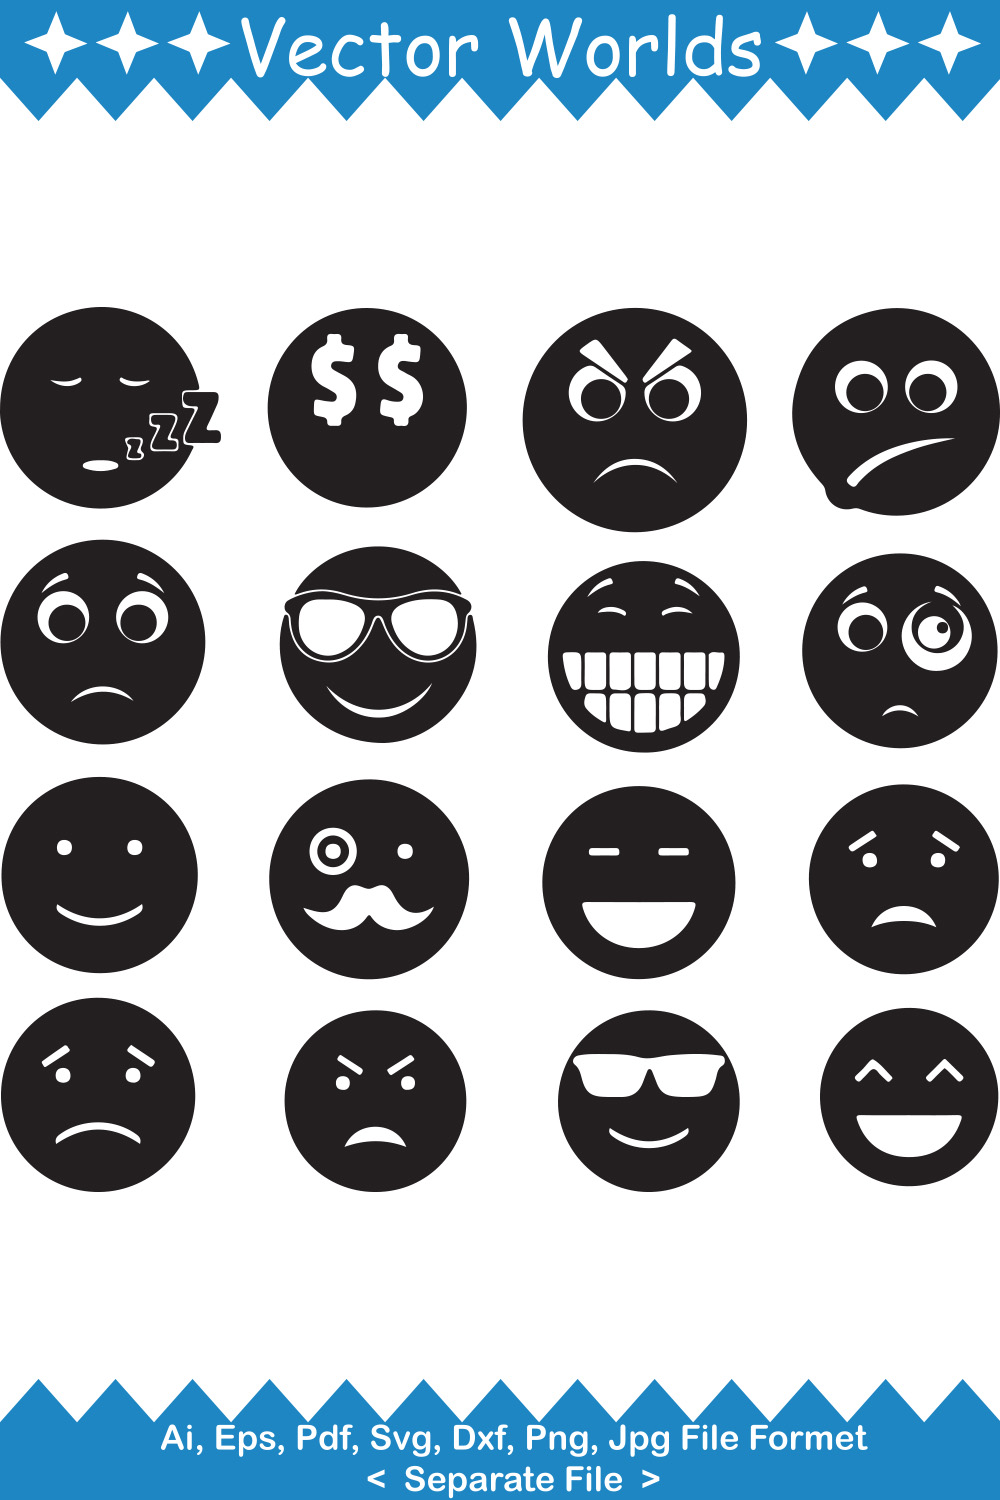 Emoji SVG Vector Design pinterest image.